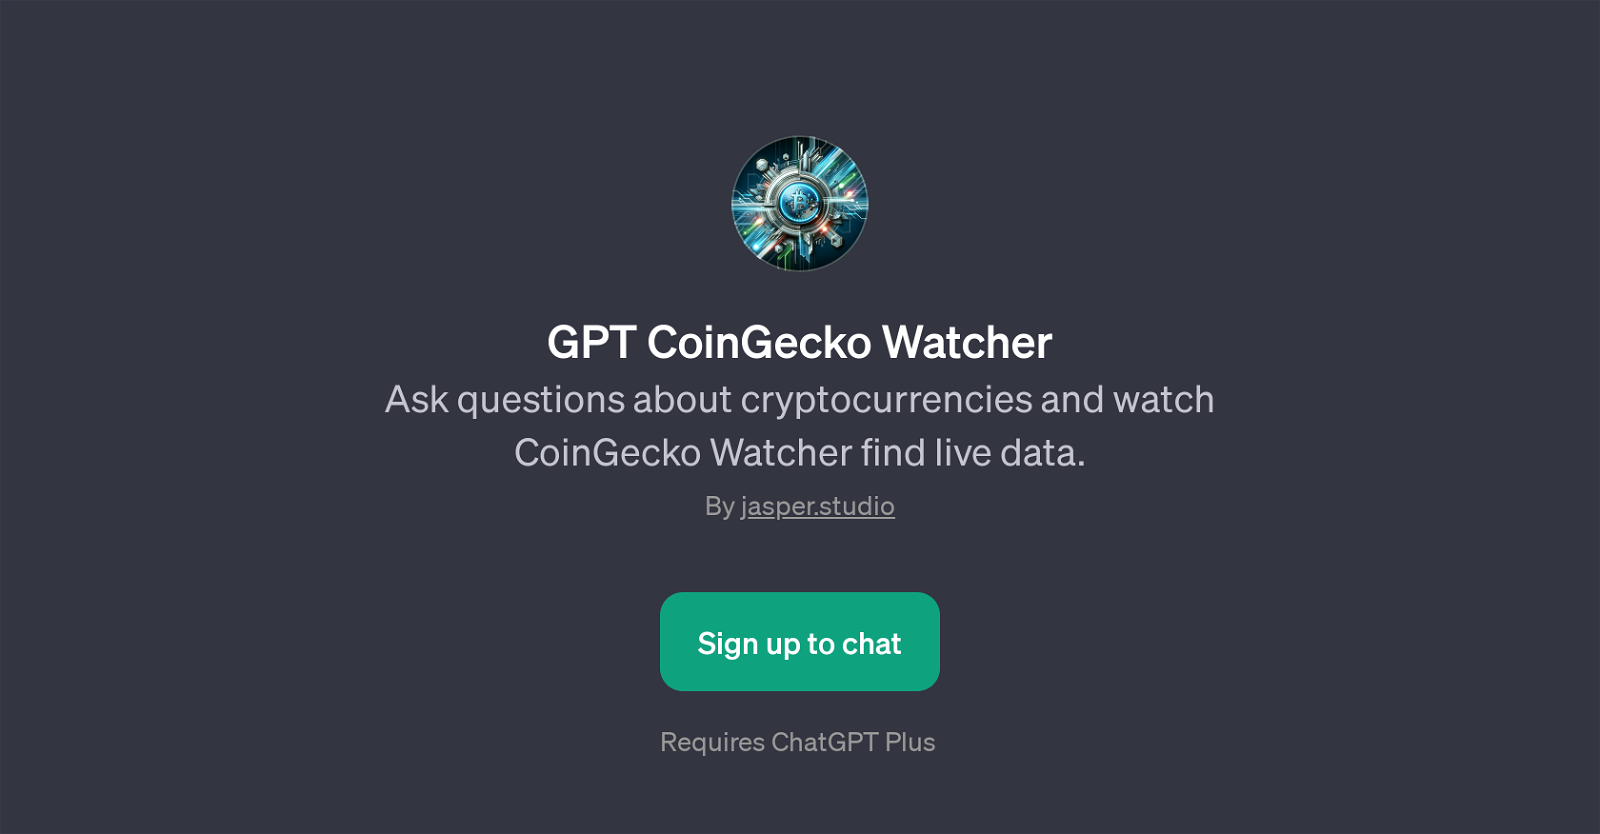 GPT CoinGecko Watcher website